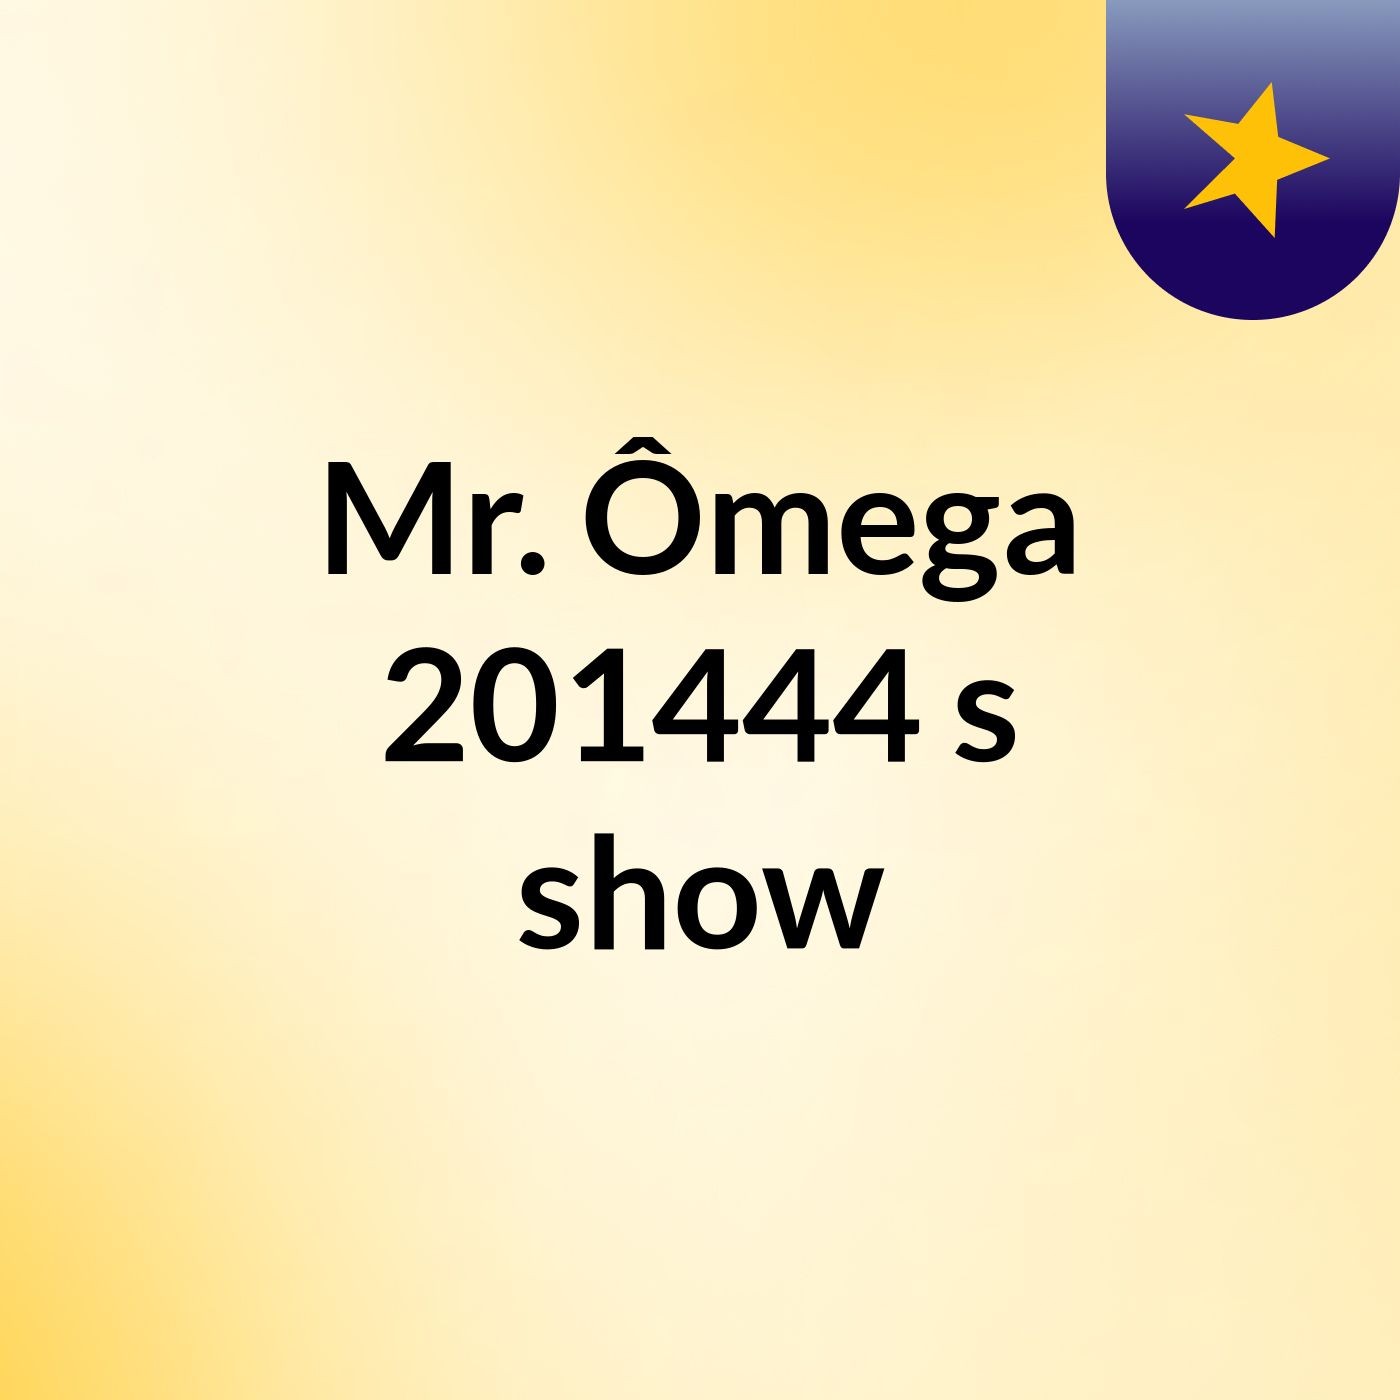 Mr. Ômega 201444's show